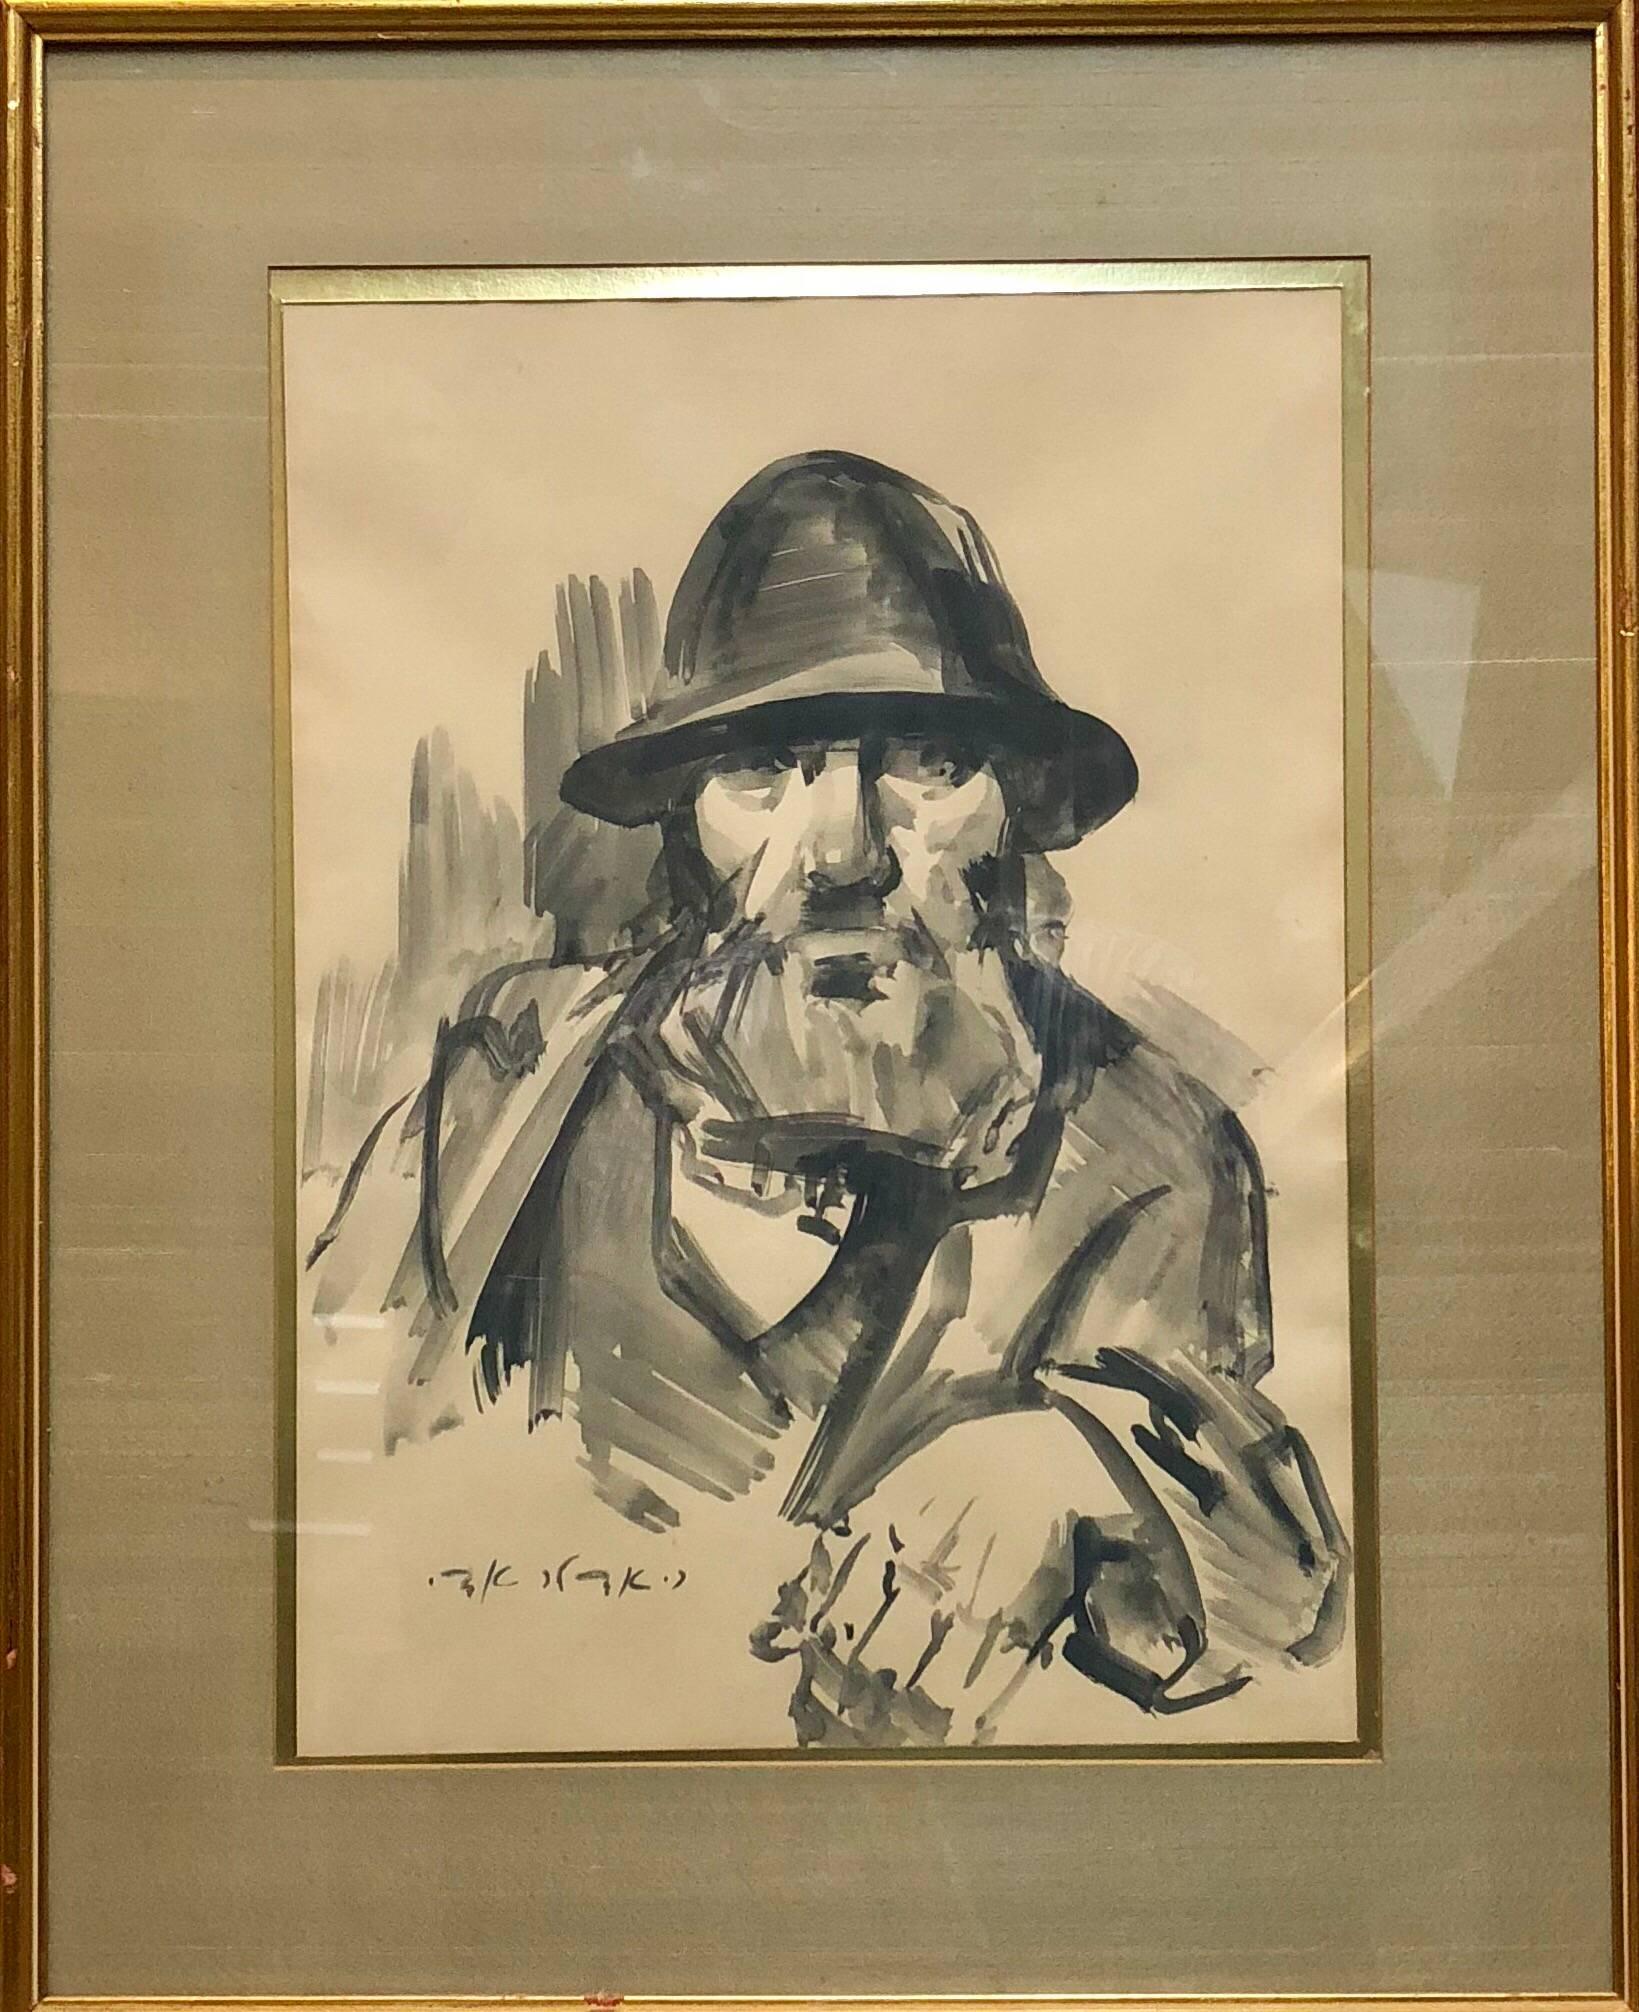 Israeli Judaica, expressionistisches Gouachel-Gemälde eines Rabbiners – Painting von Adolf Adler